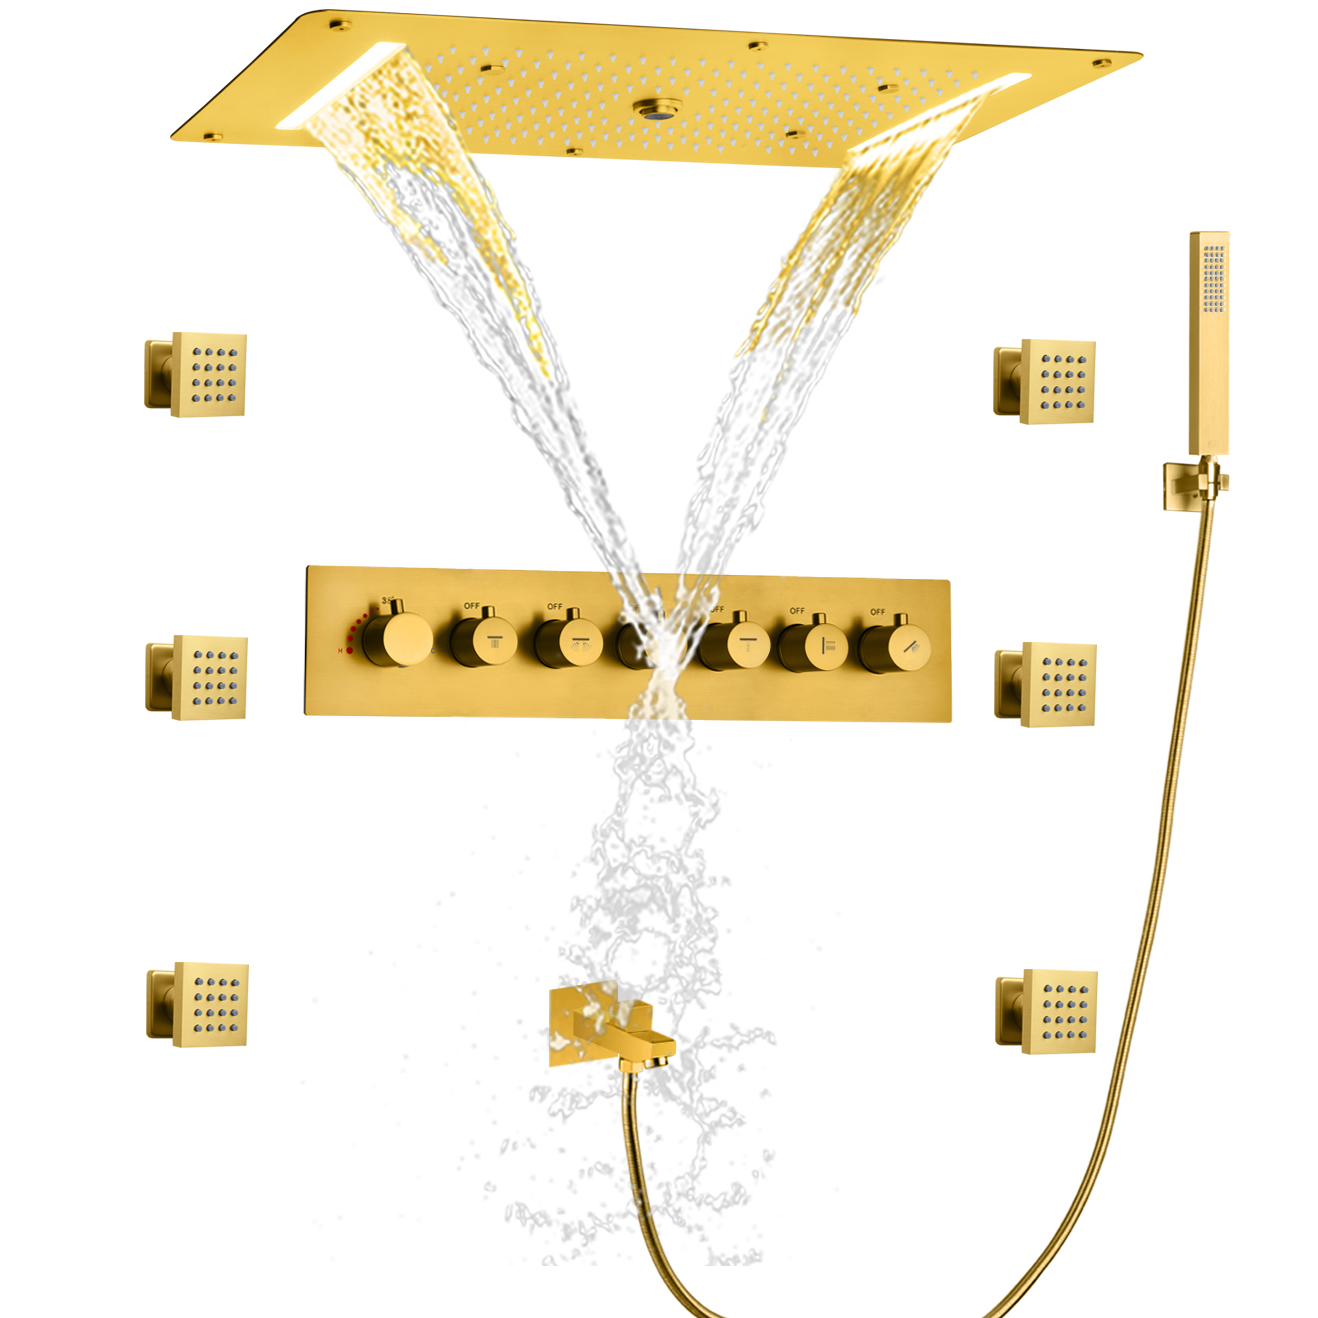 Oro pulido LED termostático juego de ducha de baño sistema de ducha oculto tipo lluvia boquilla de bañera de mano